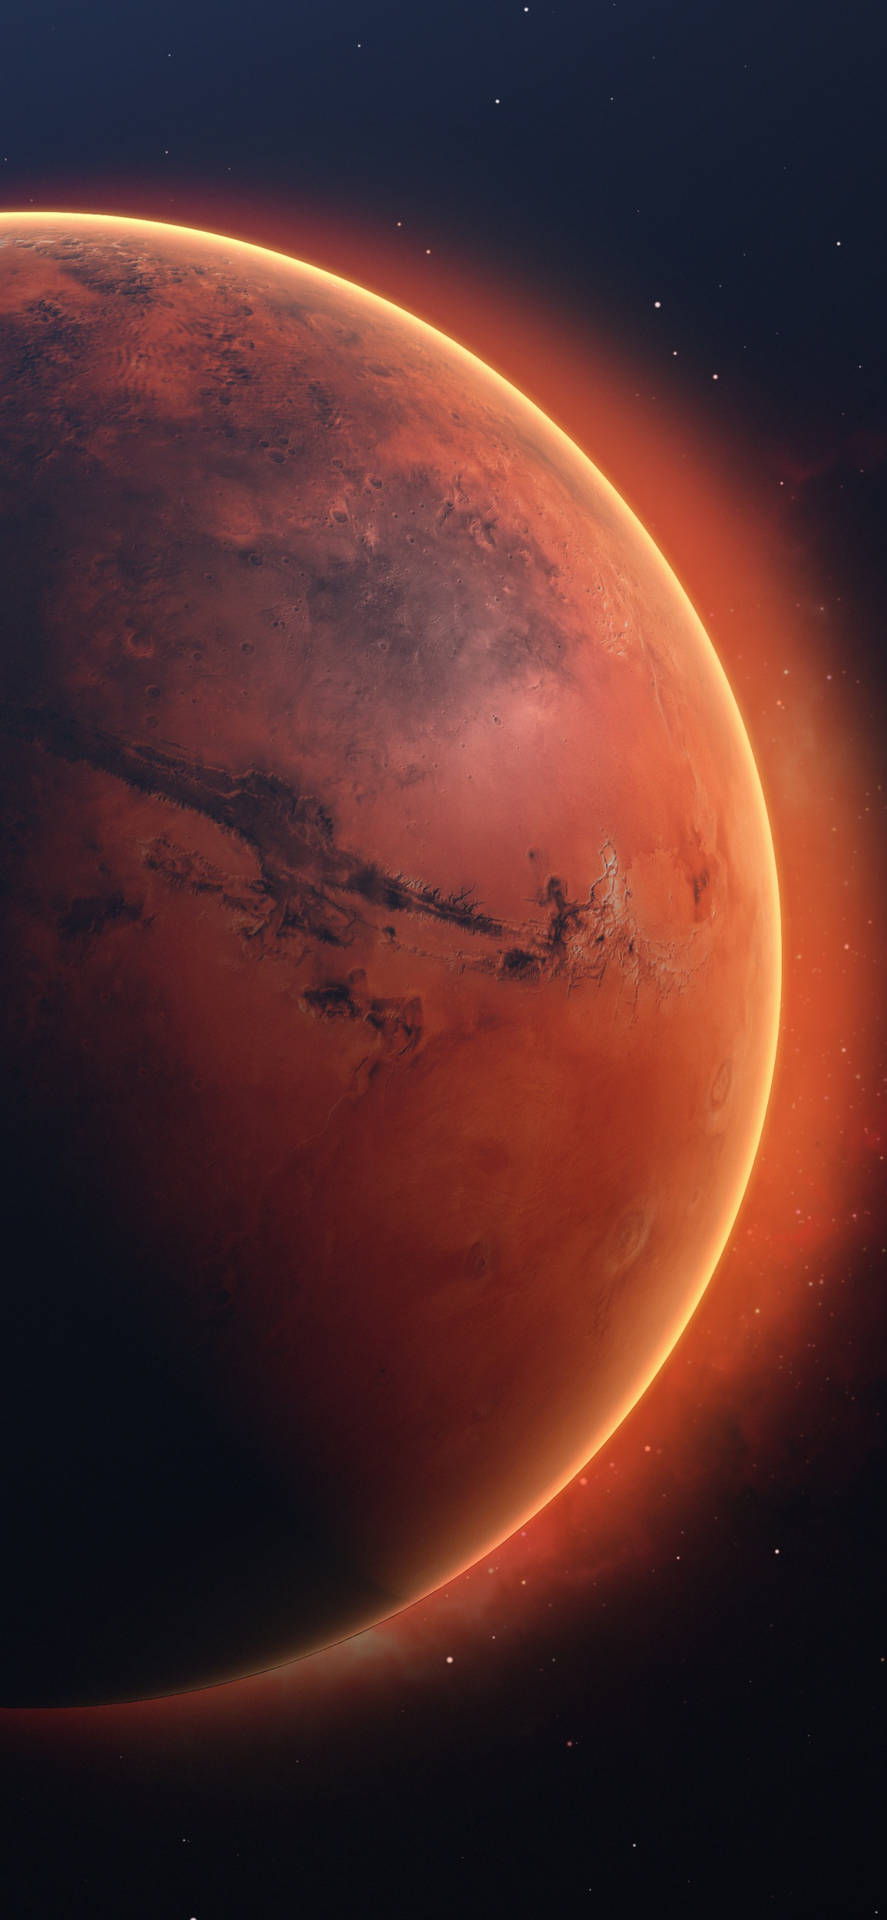 En planet i rummet med en rød planet i baggrunden. Wallpaper